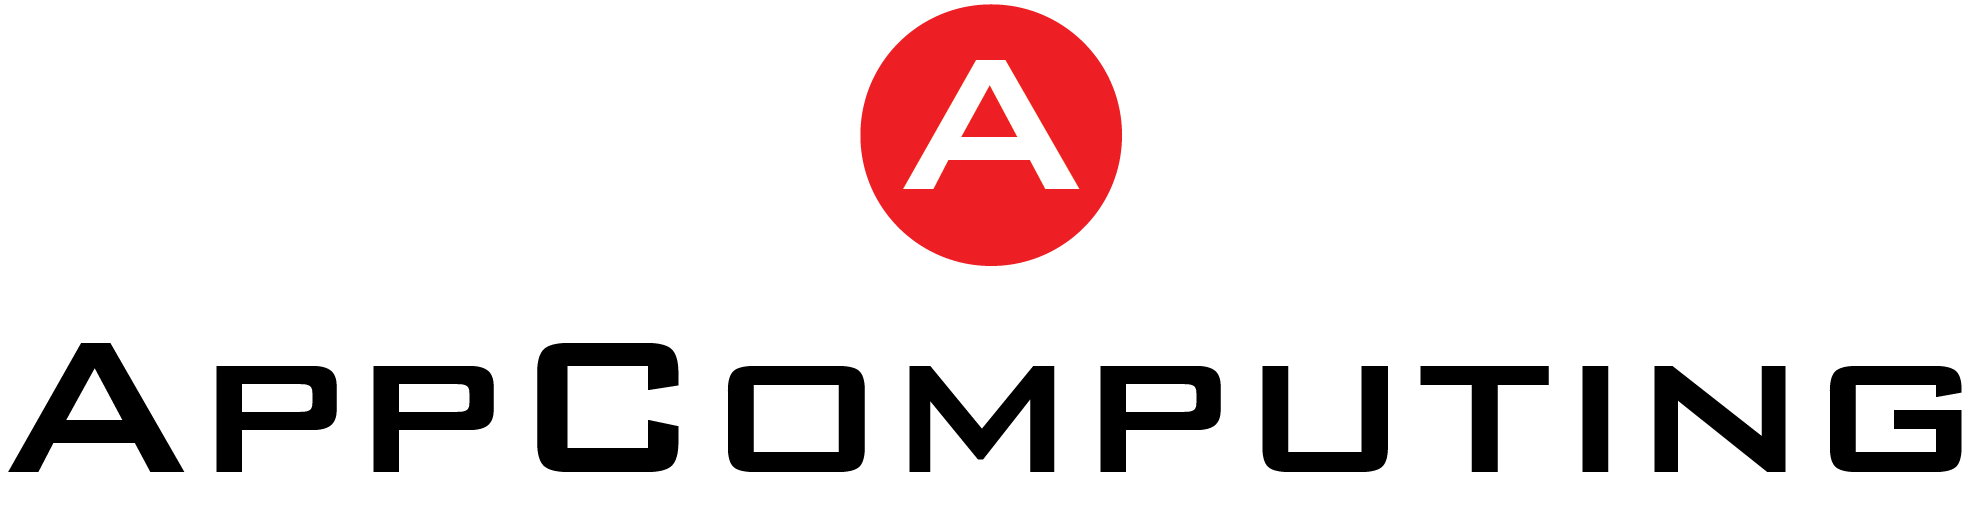 AppComputing Projection des ventes basée sur la planification des ressources de fabrication (MRP) - AppComputing, Inc.